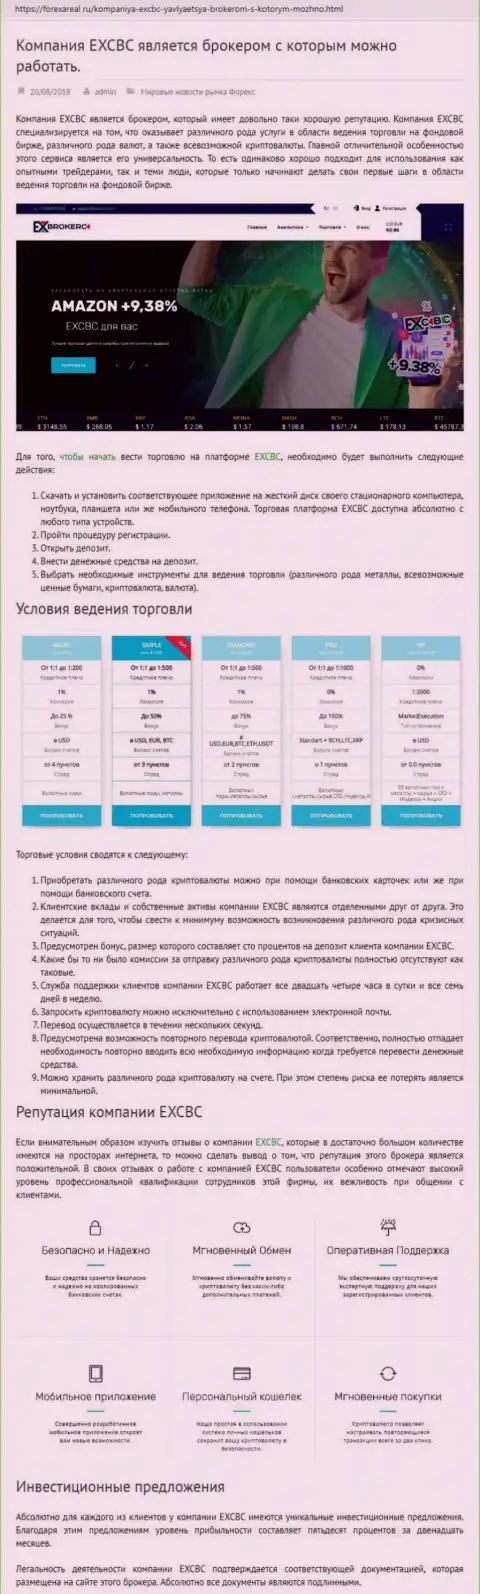 Web-портал форексареал ру представил обзор деятельности Форекс дилинговой организации EXCBC Сom